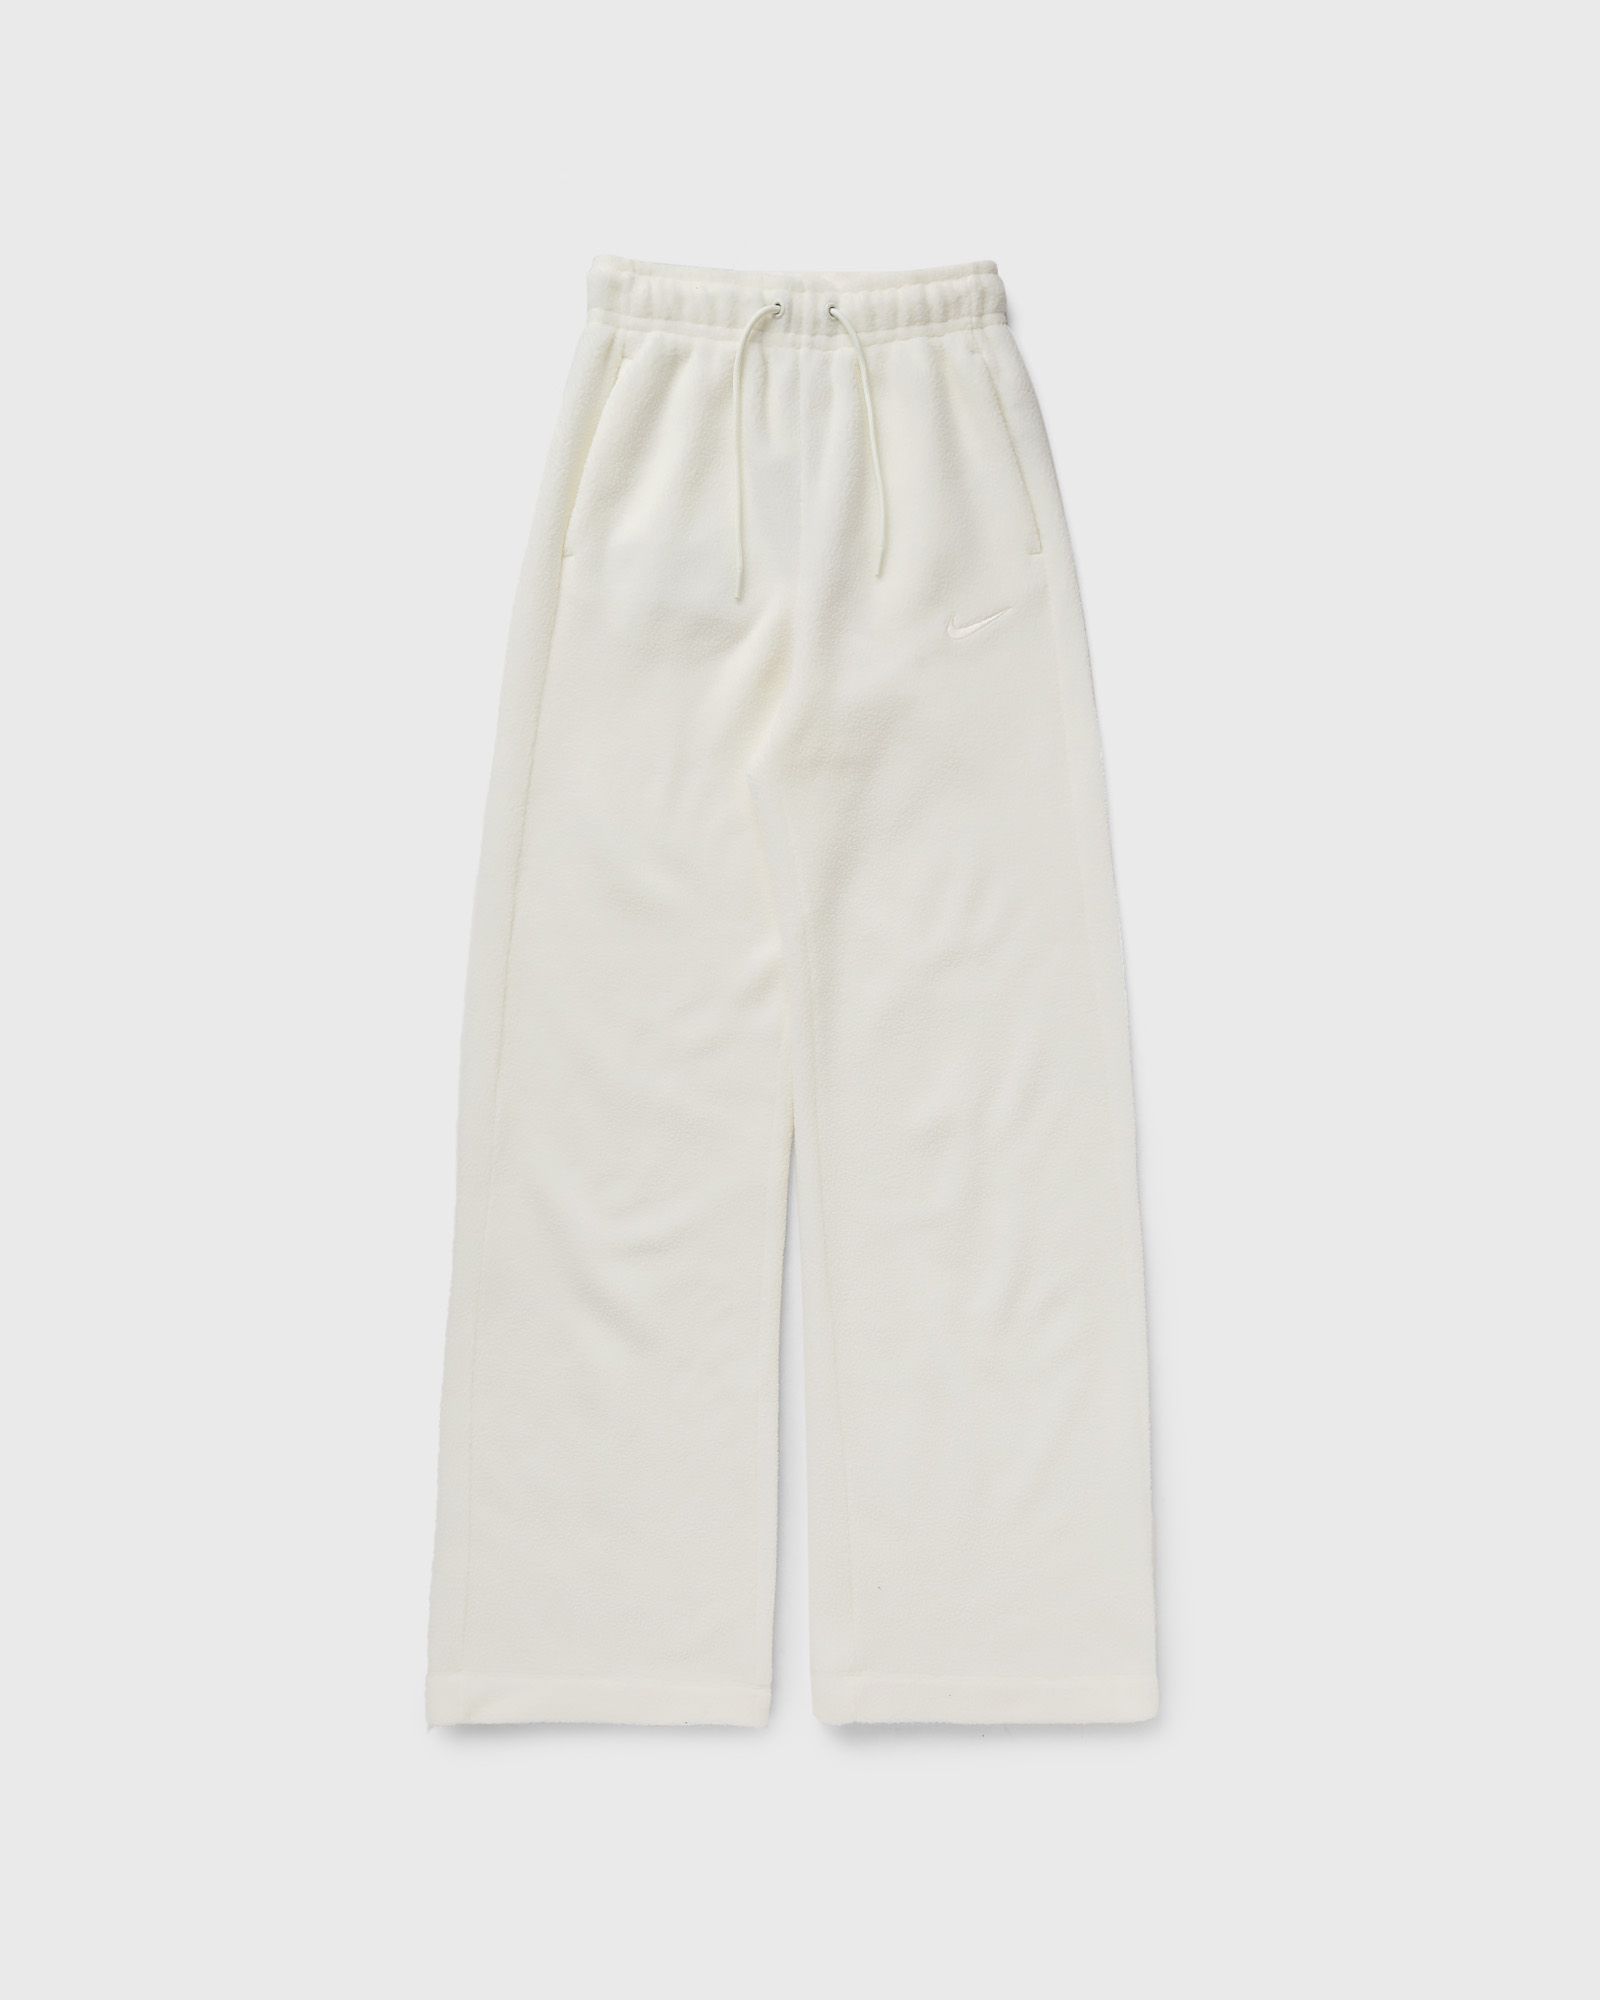 Nike - sportswear plush women's pants women sweatpants white in größe:xs